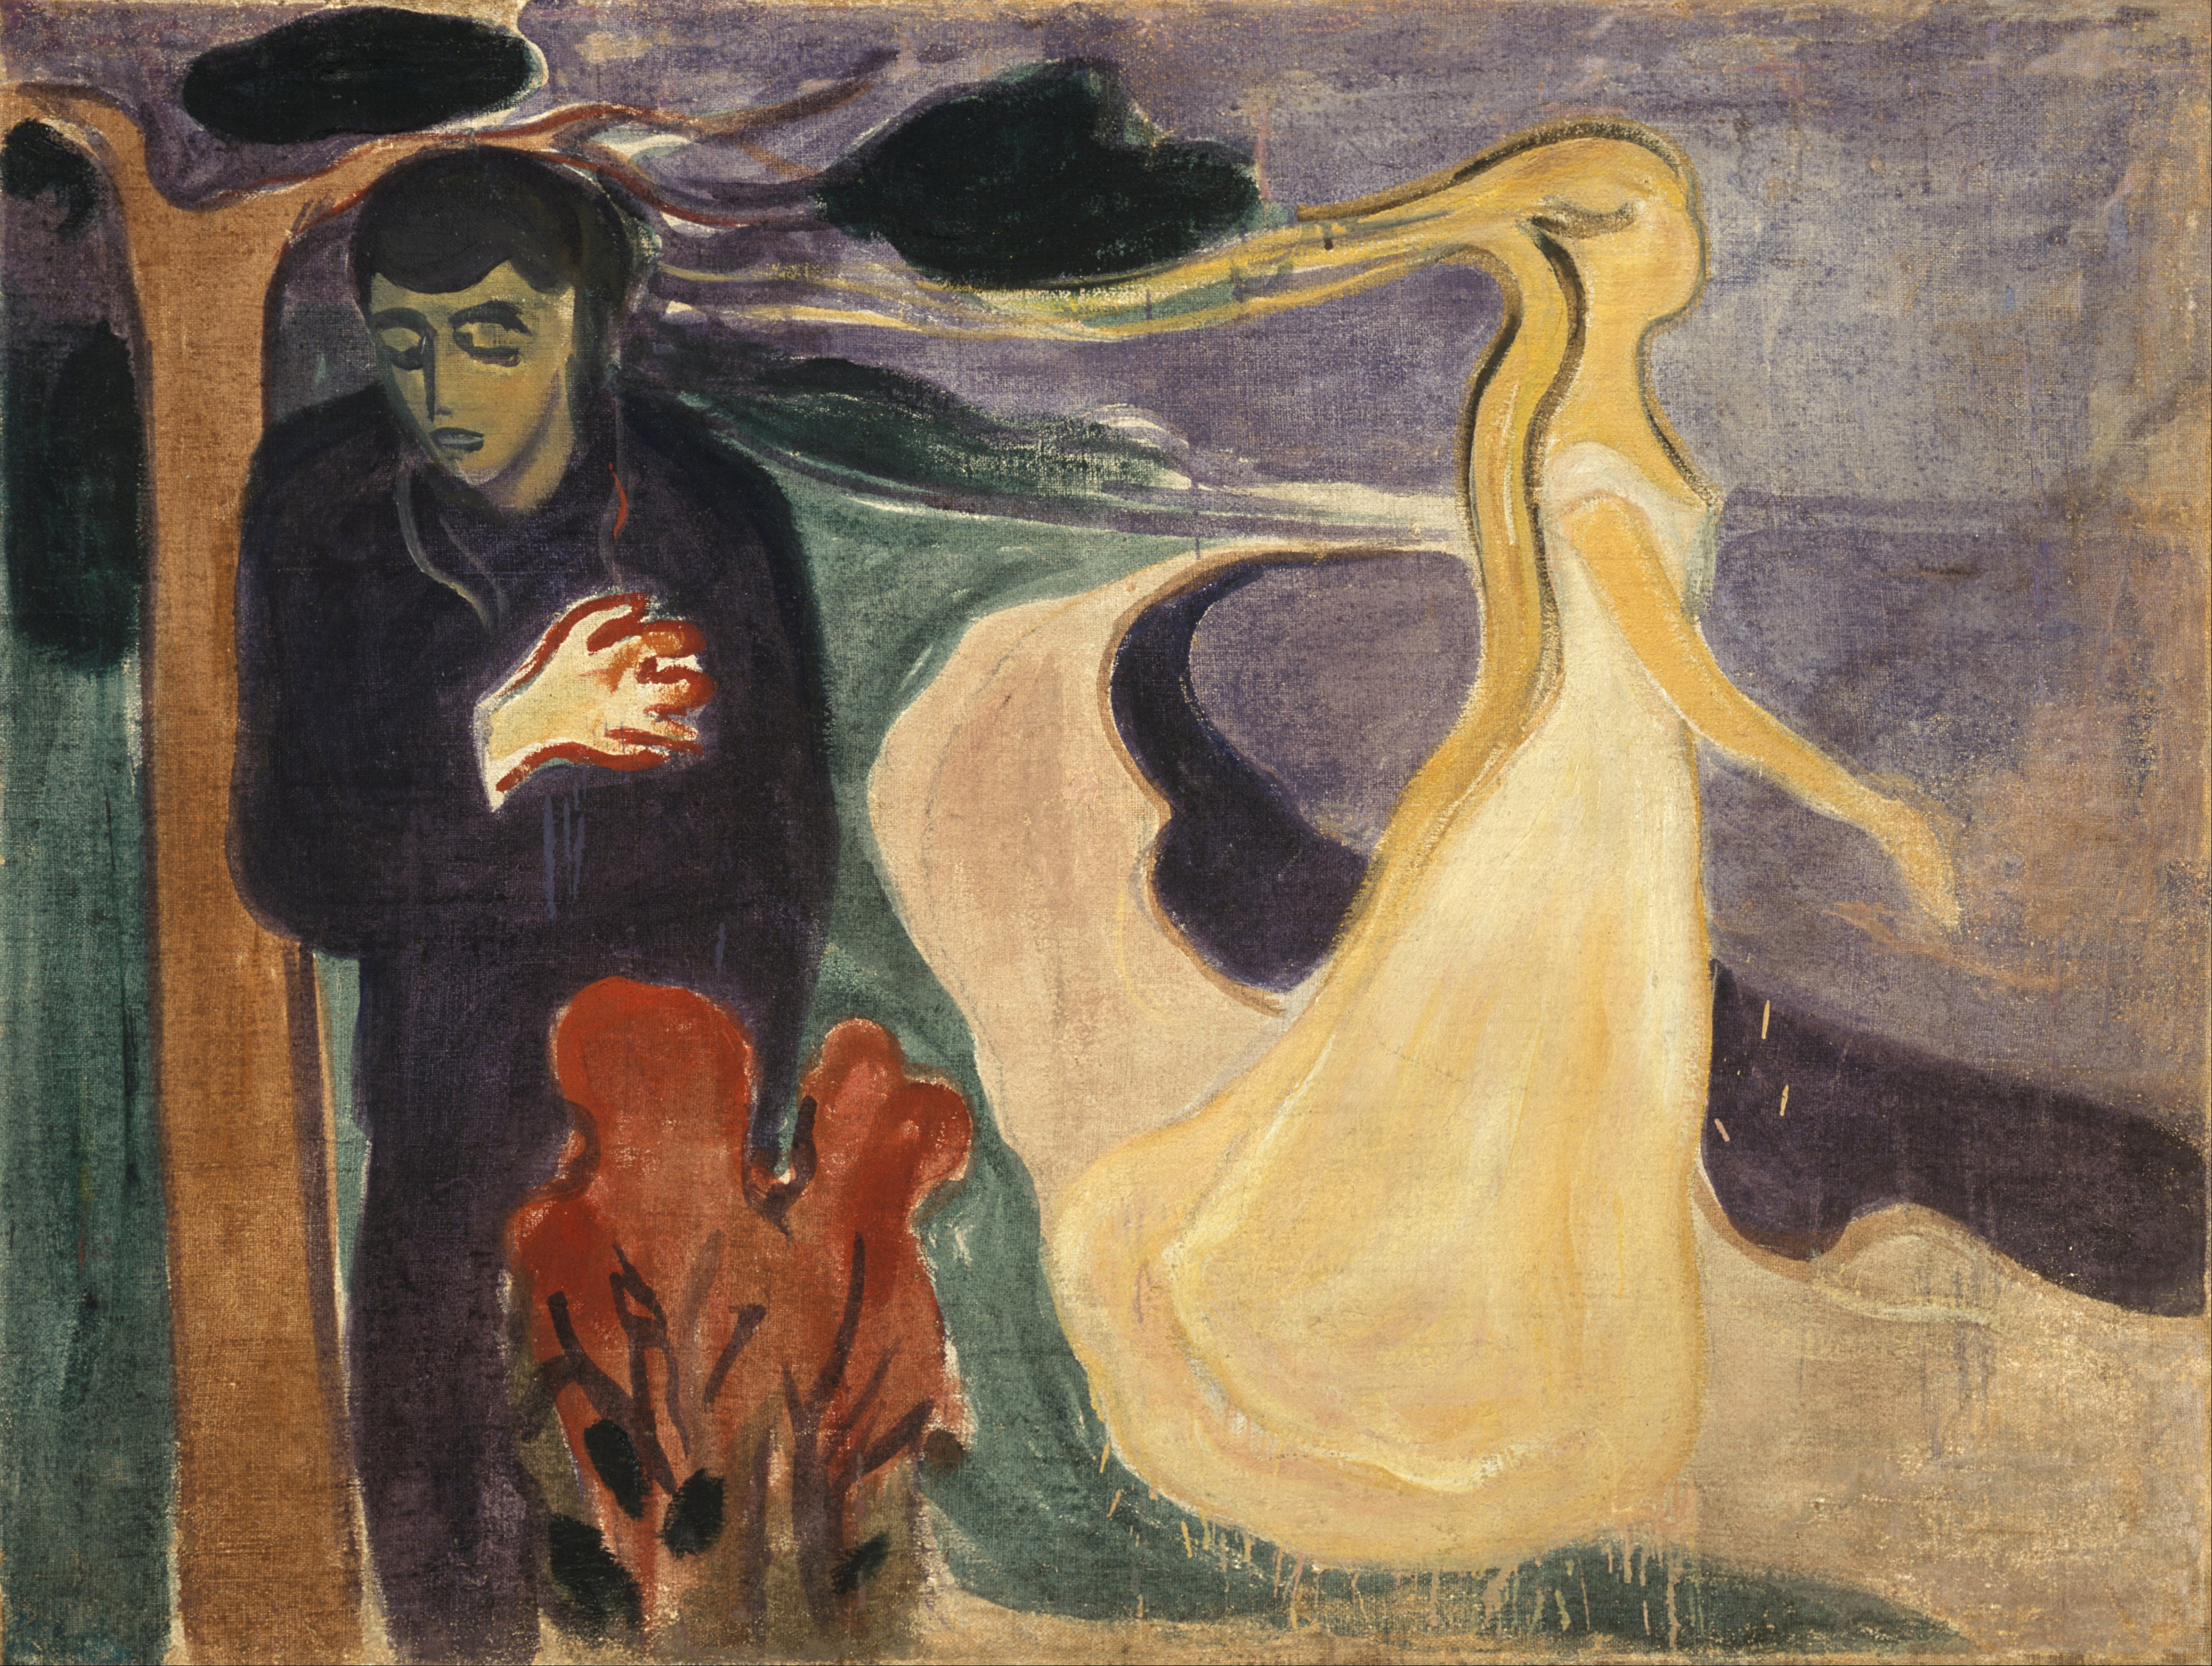 Расставание by Edvard Munch - 1896 - 96 × 127 см 